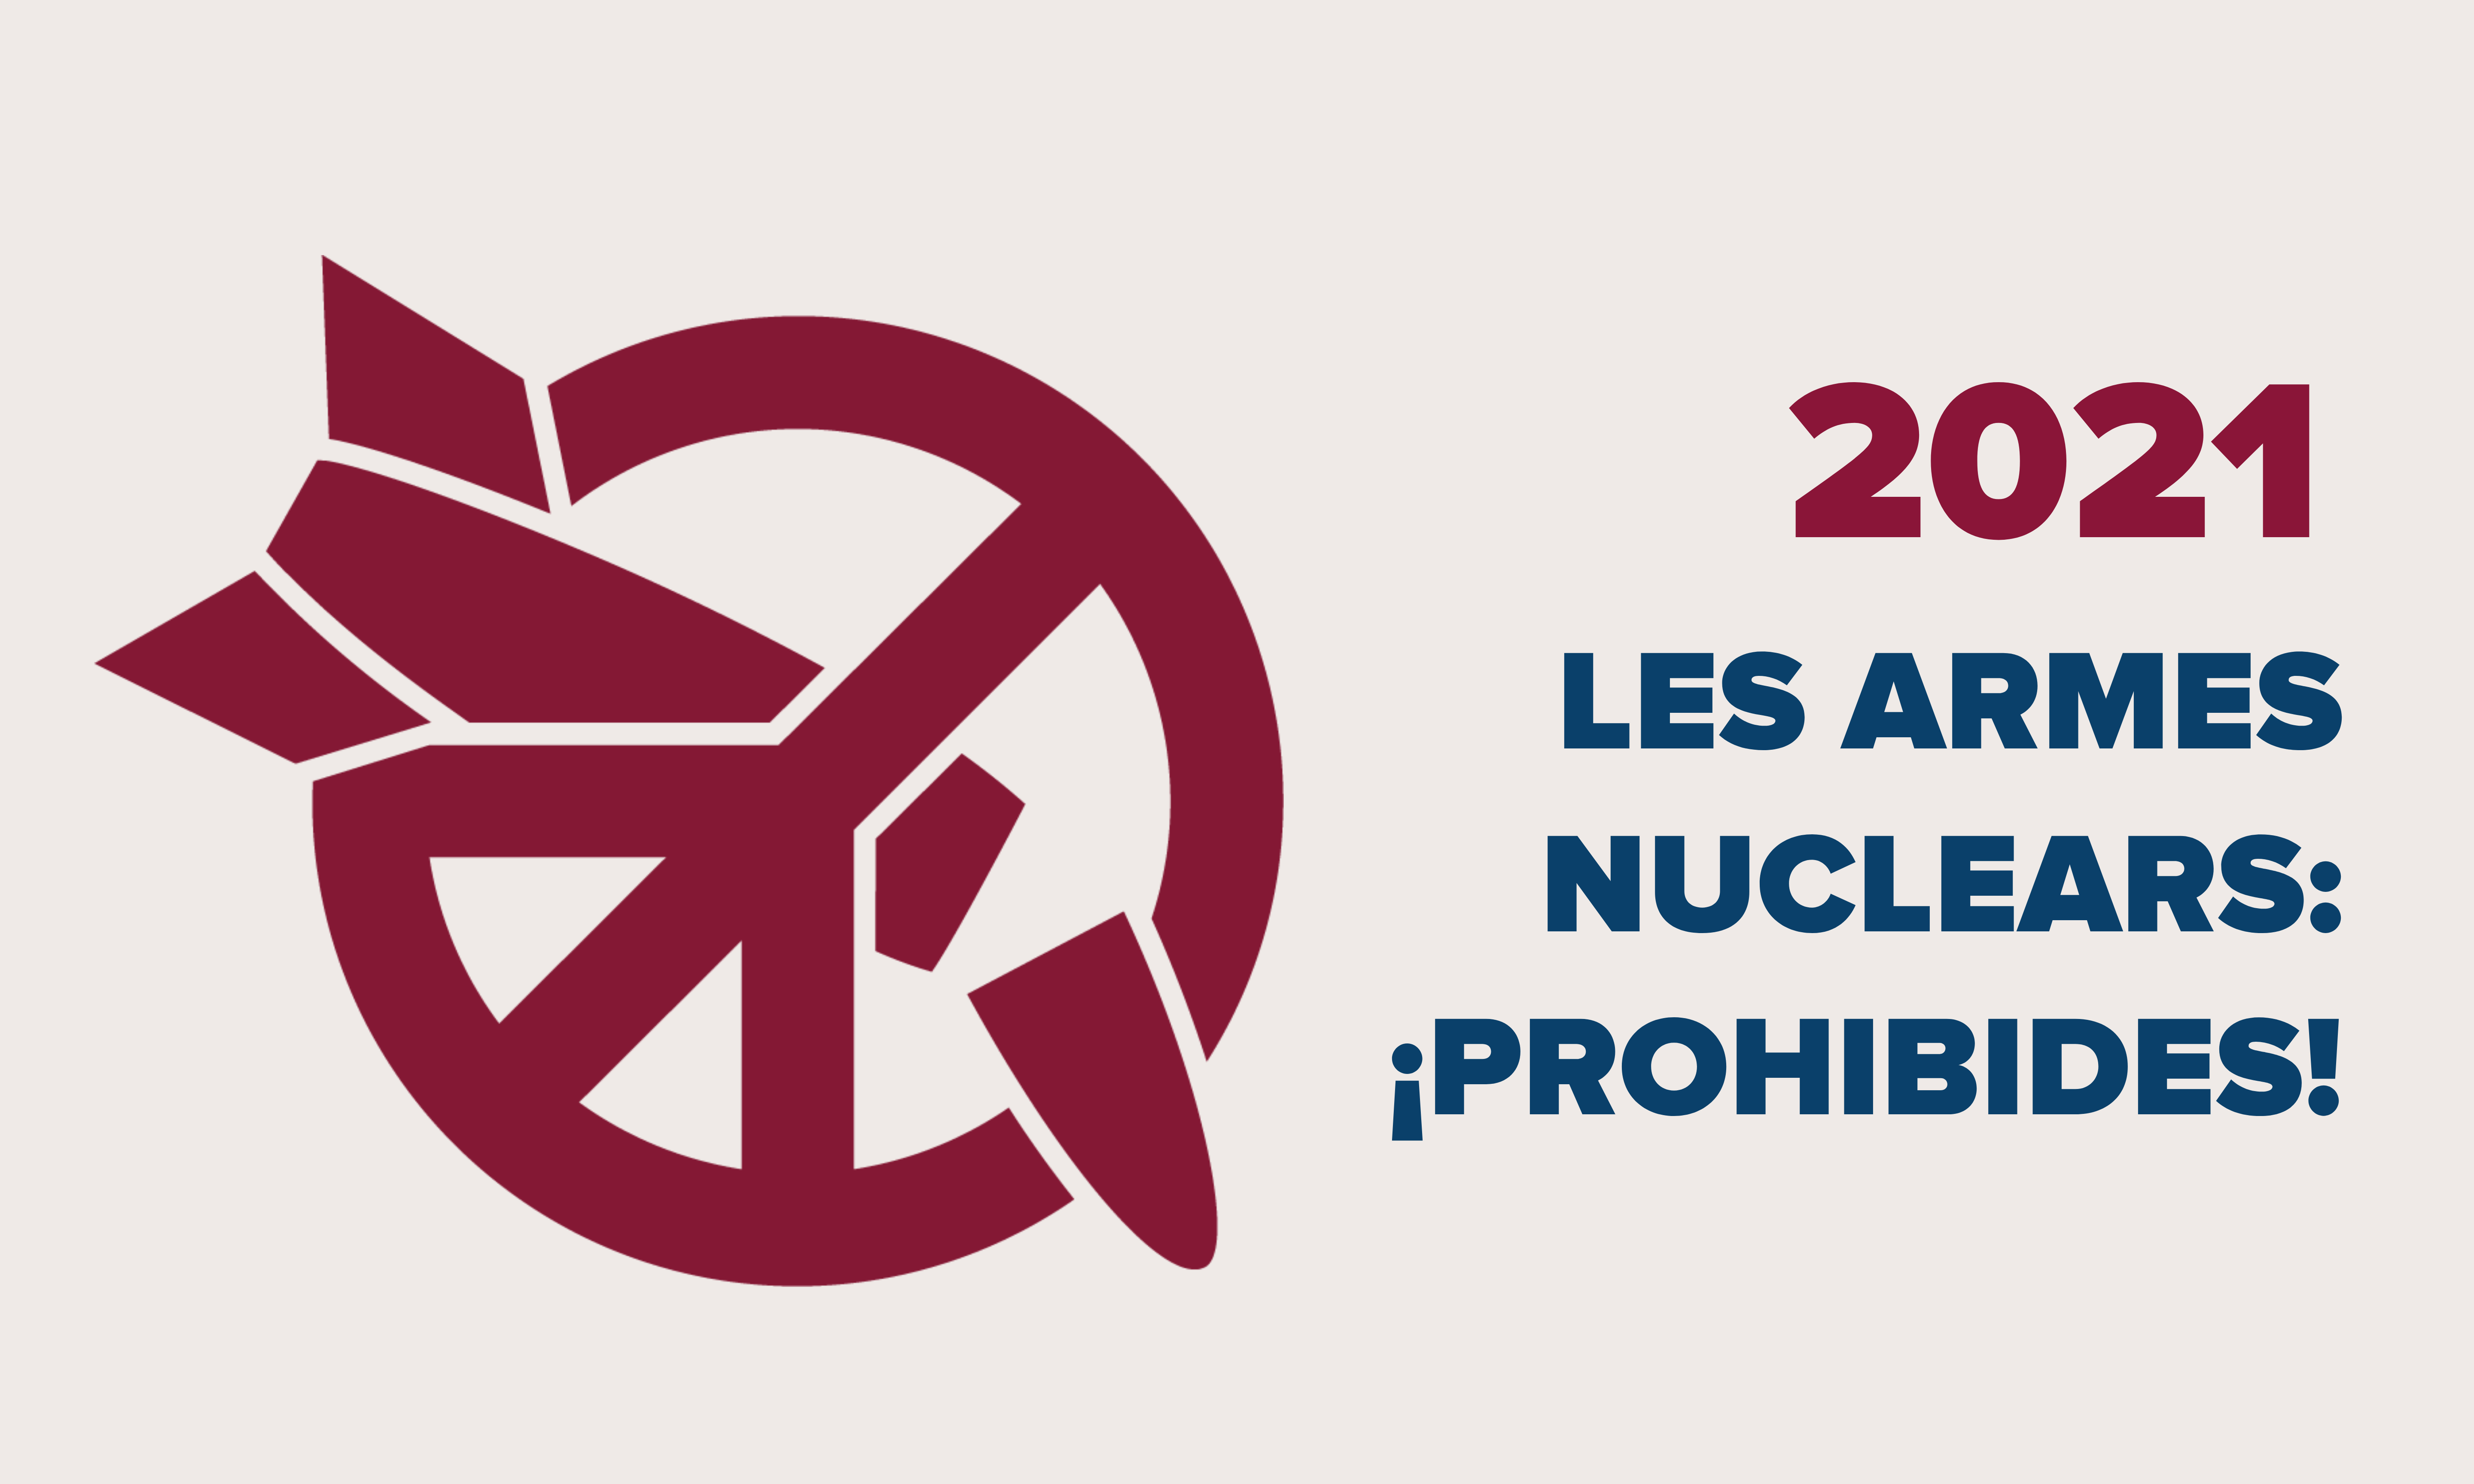 Comunicat del Centre Delàs amb motiu de l’entrada en vigor del Tractat sobre la Prohibició de les Armes Nuclears